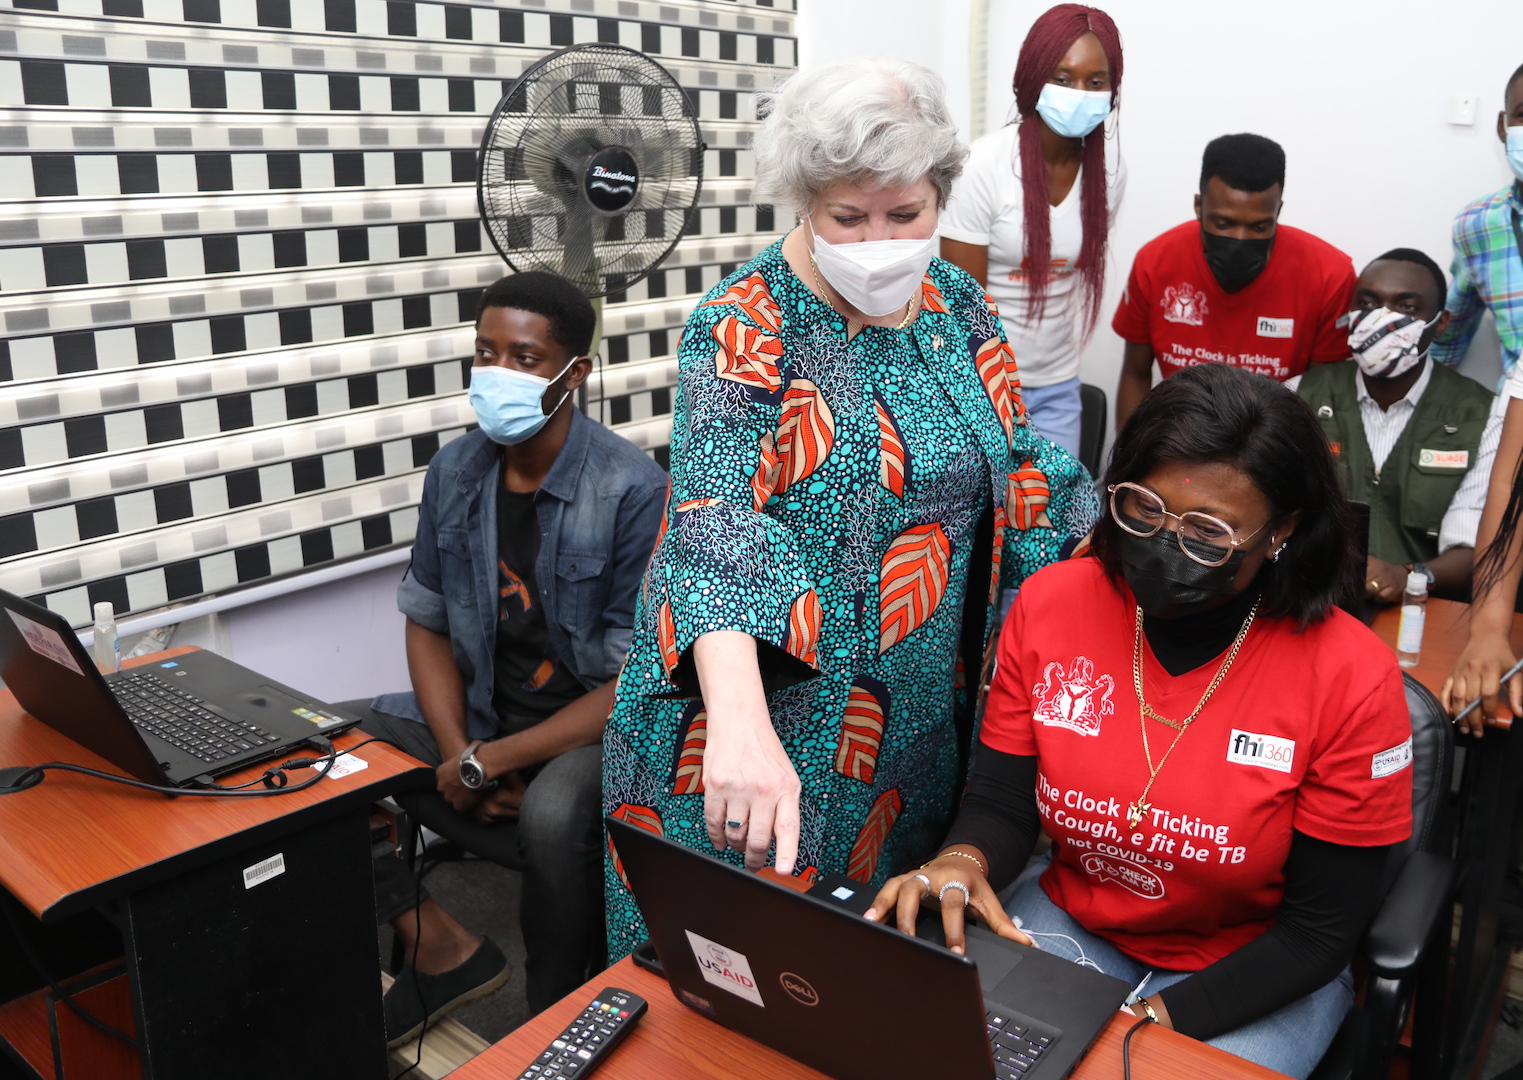 US Ambassador Mary Beth Visits Akwa Ibom, Inspects Medical Facilities